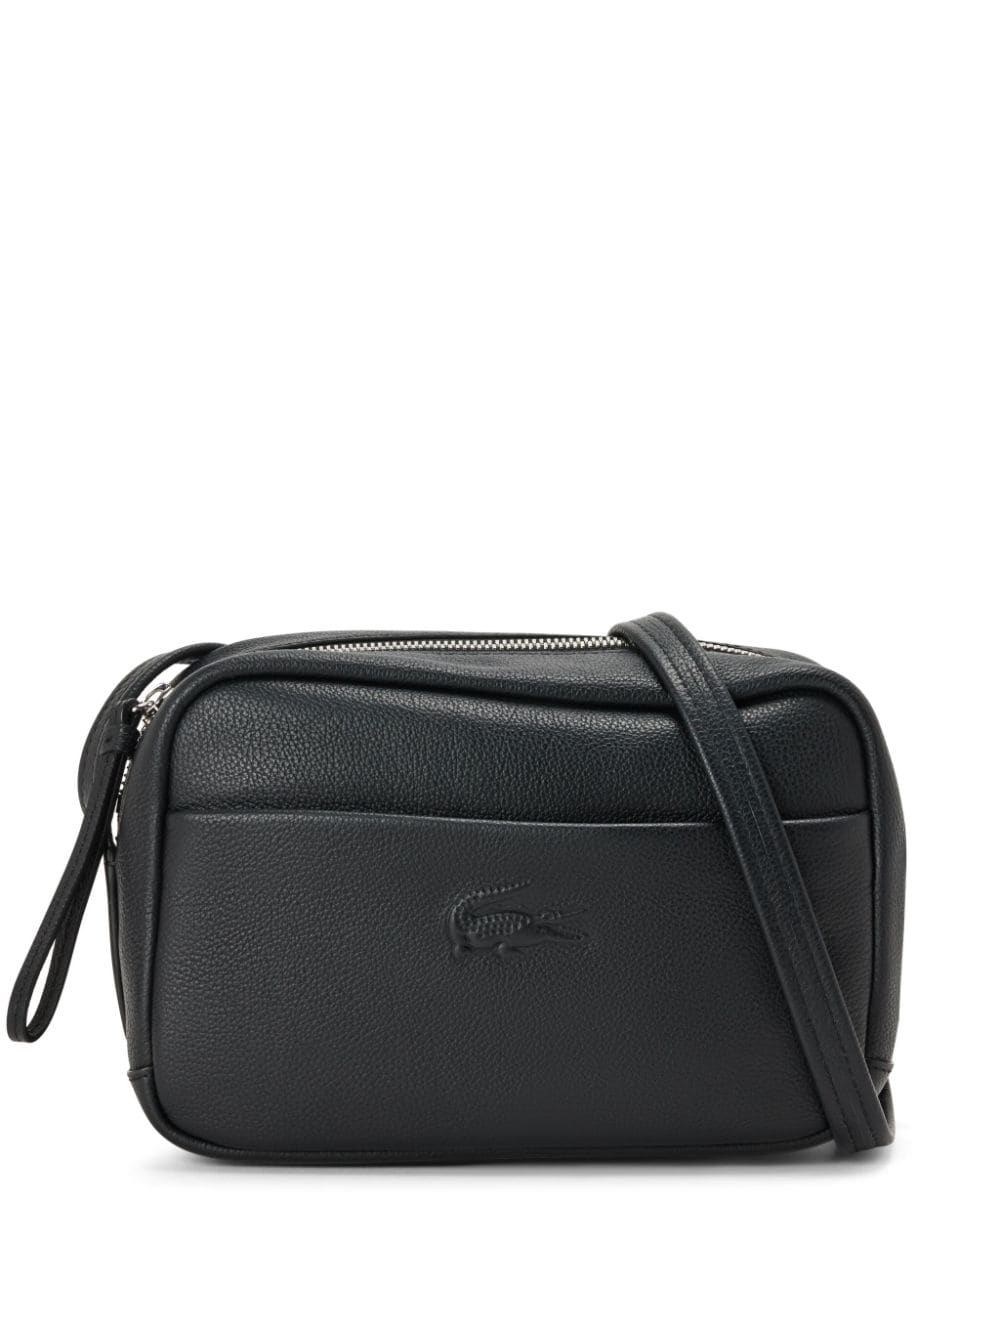 Lacoste Crossover Shoulder Bag In Black